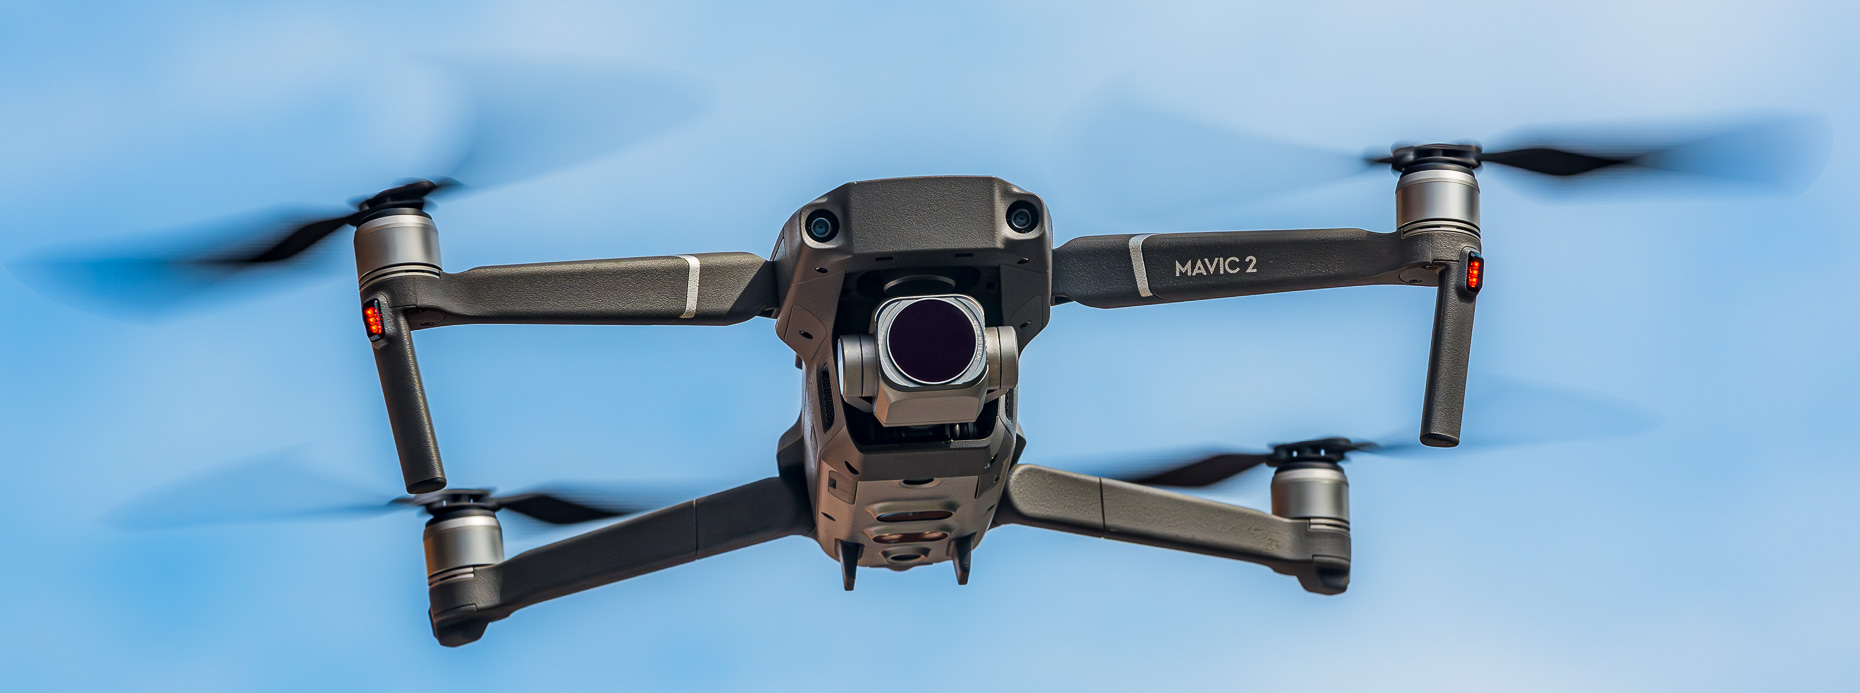 Eine Drohne des Typ DJI Mavic 2 Pro mit Hasselblad L1D-20c Kamera fliegt vor blauem Himmel - fotografiert vom Drohnenfotograf aus Kassel” style=